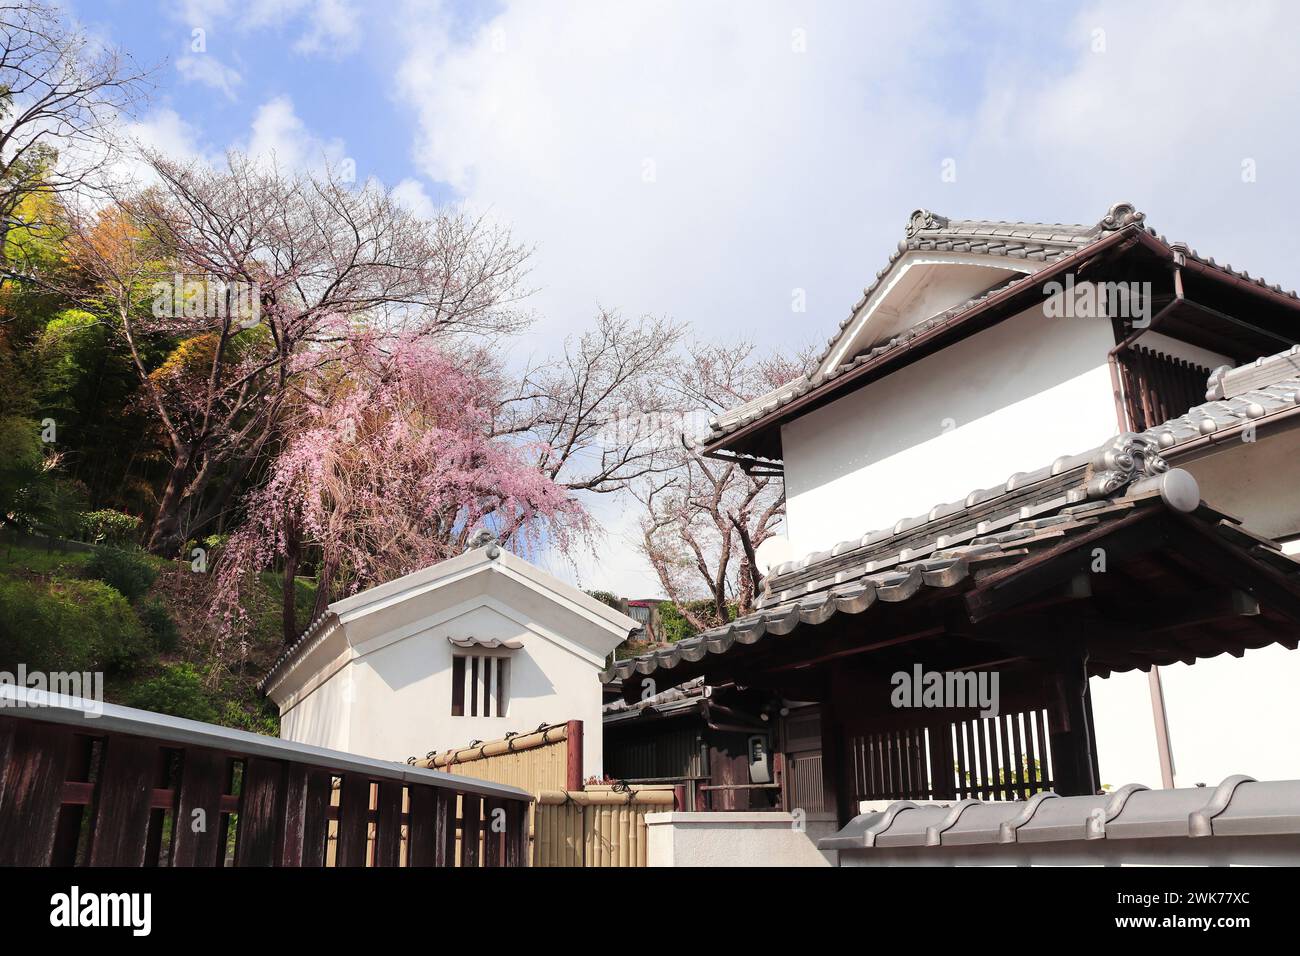 Vieilles maisons et fleurs de sakura, ville de Kurashiki, Japon. Fête traditionnelle japonaise du hanami. Saison de floraison printanière des cerises en Asie Banque D'Images